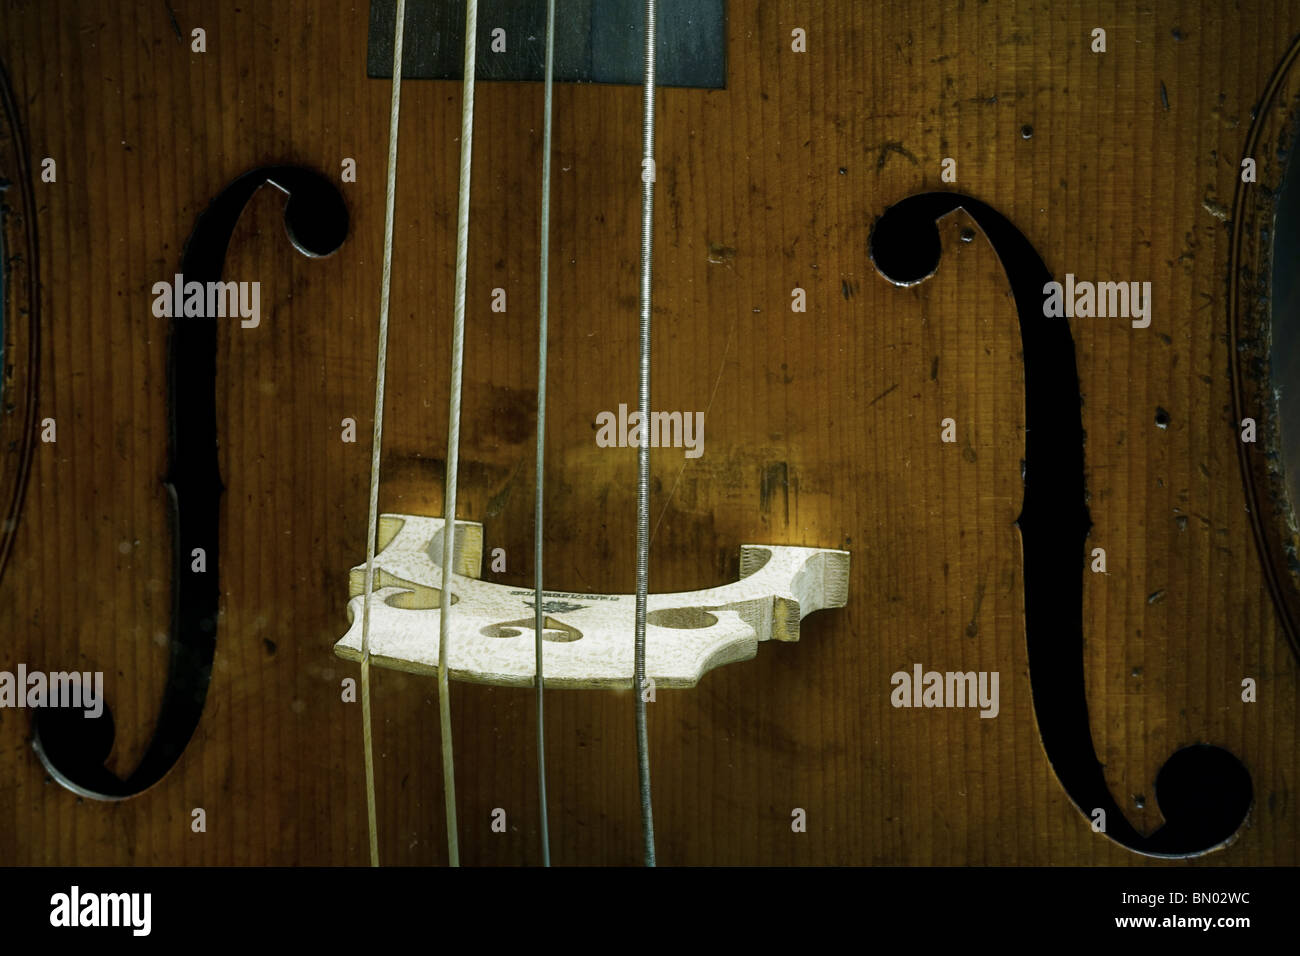 Dettaglio di un violoncello F fori Foto Stock